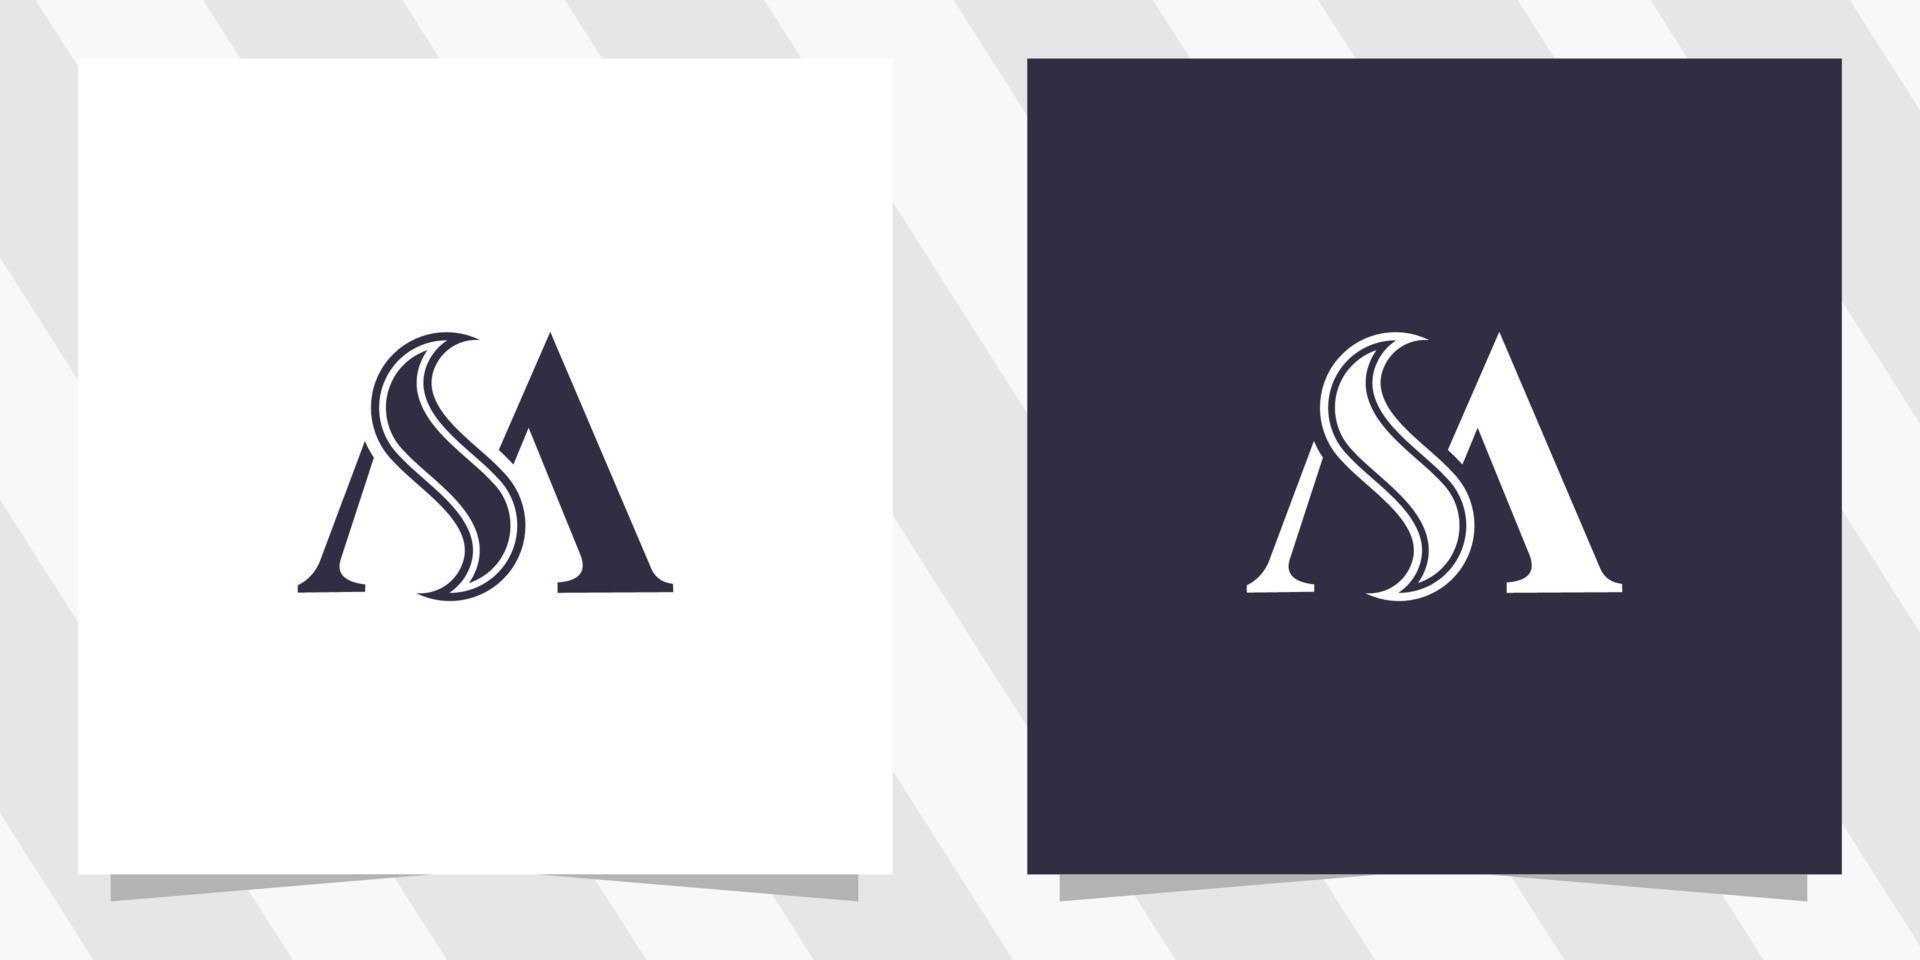 lettera SM sm logo design vettore